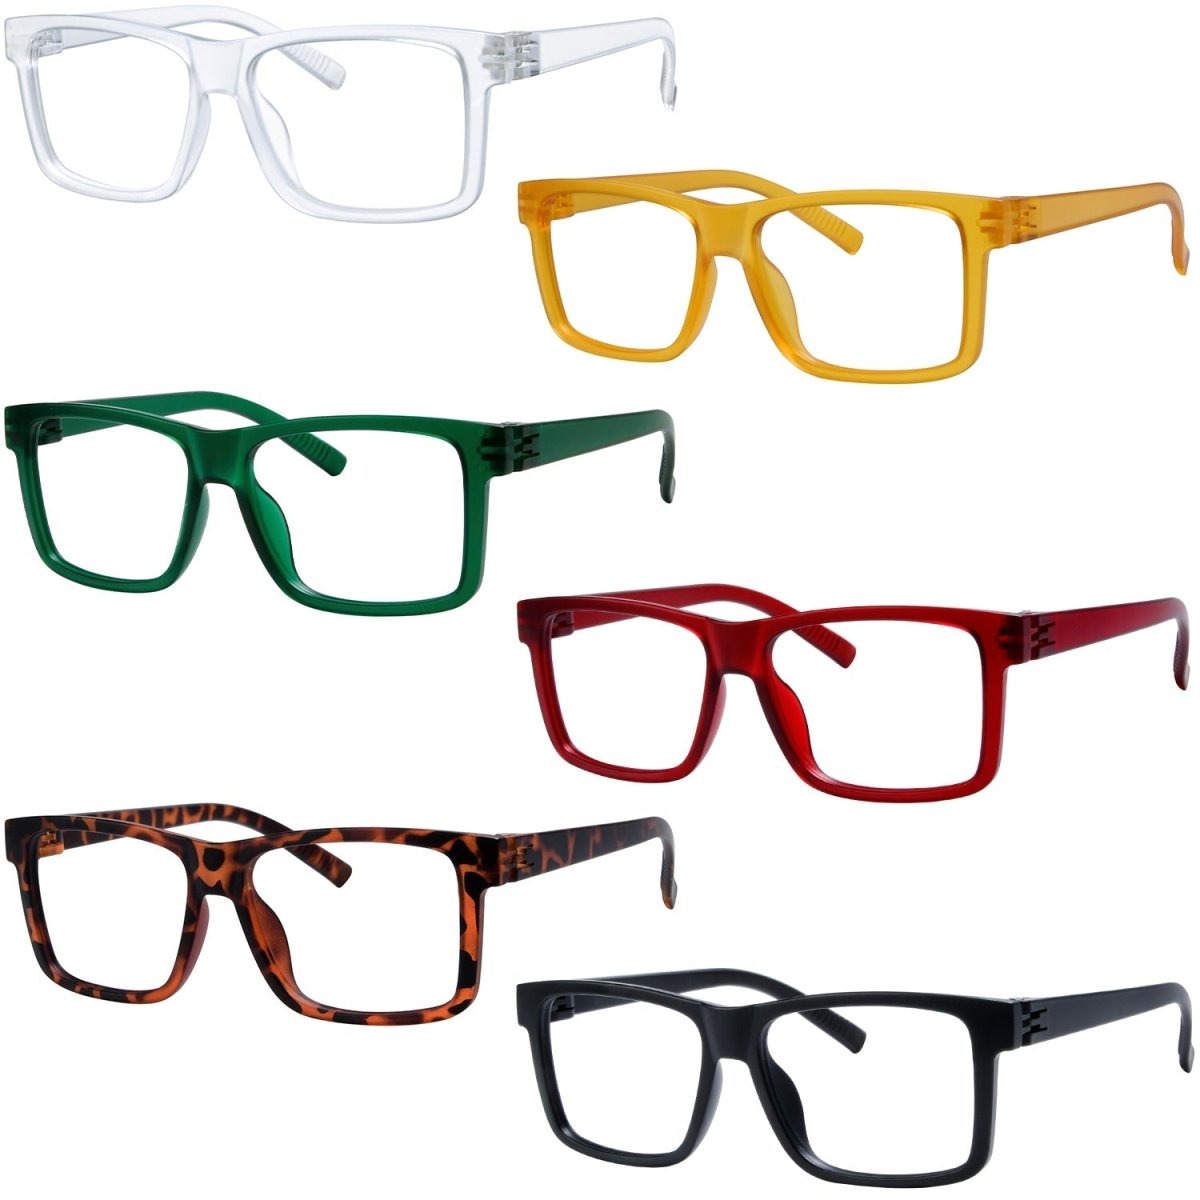 6 Pack Oversized Metal-free Screwless Reading Glasses R2508eyekeeper.com